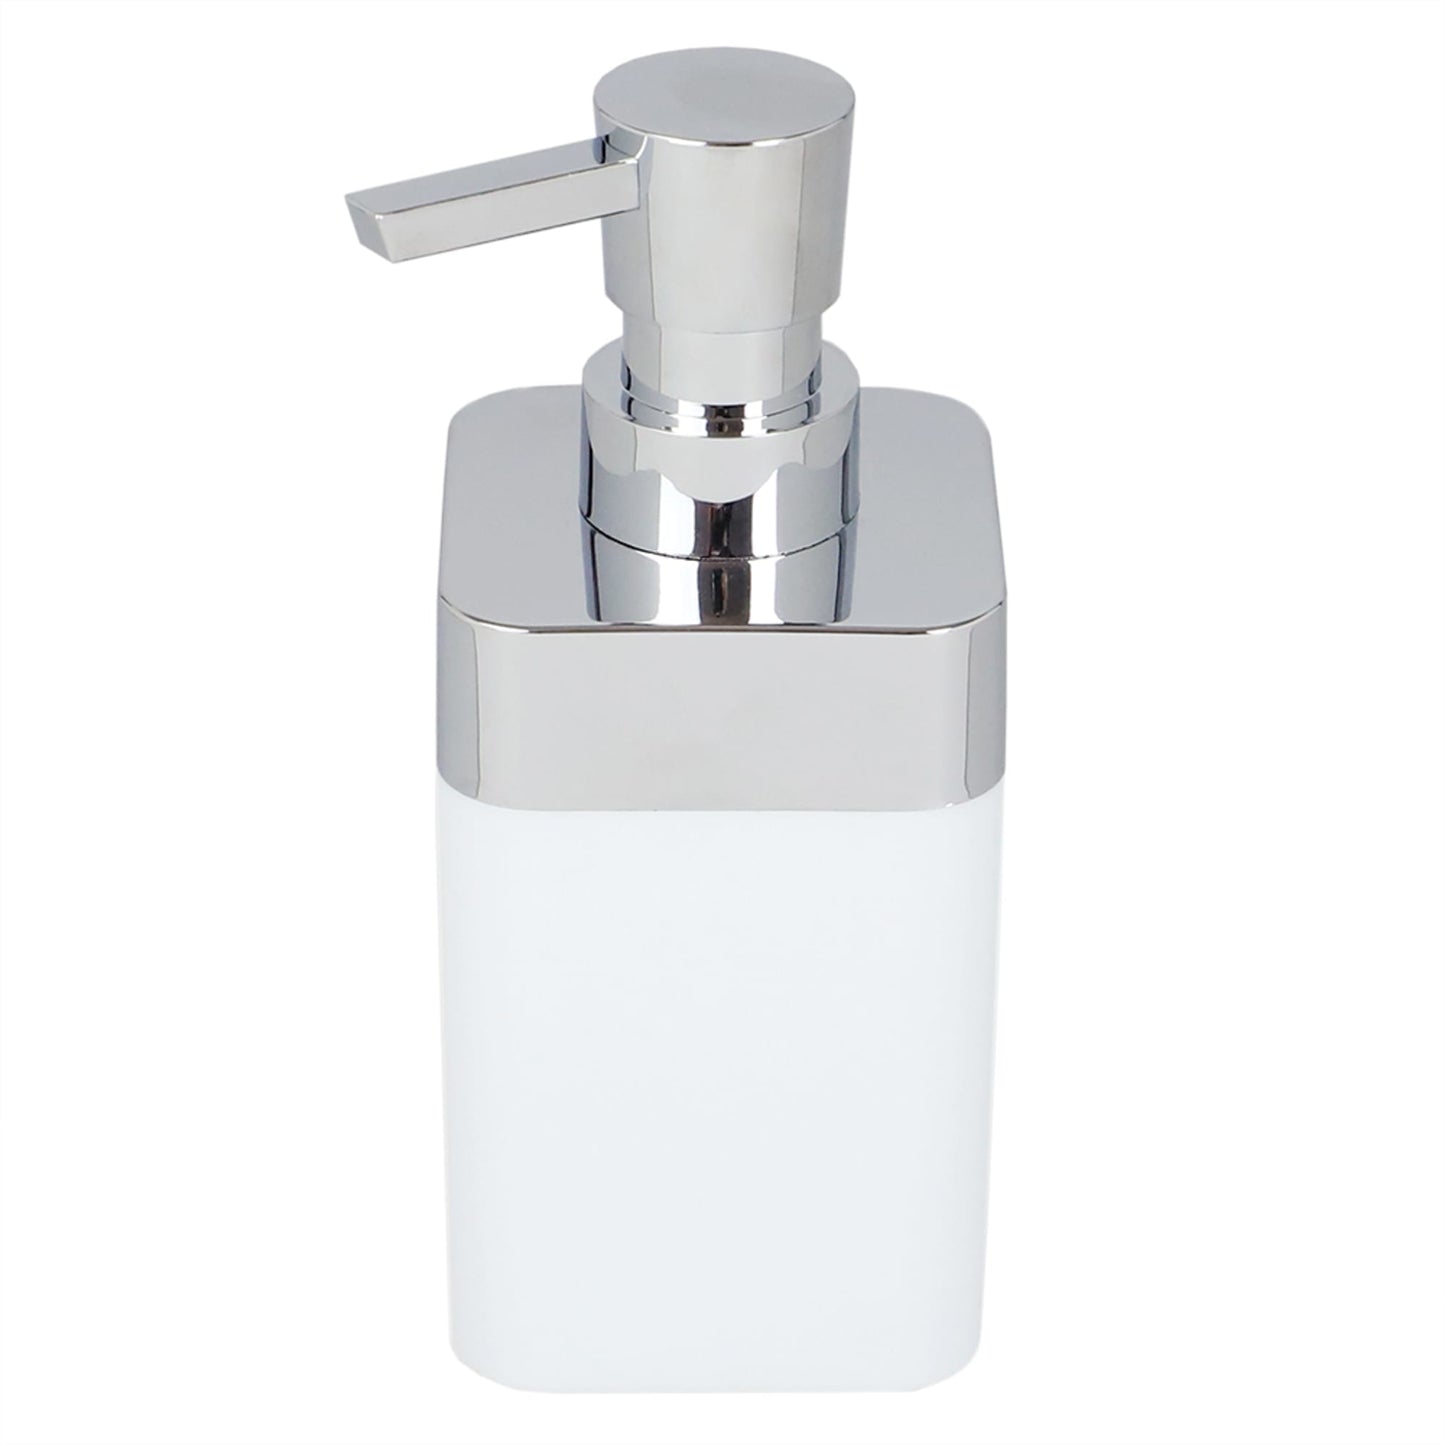 Skylar 10 oz. ABS Plastic Soap Dispenser, White